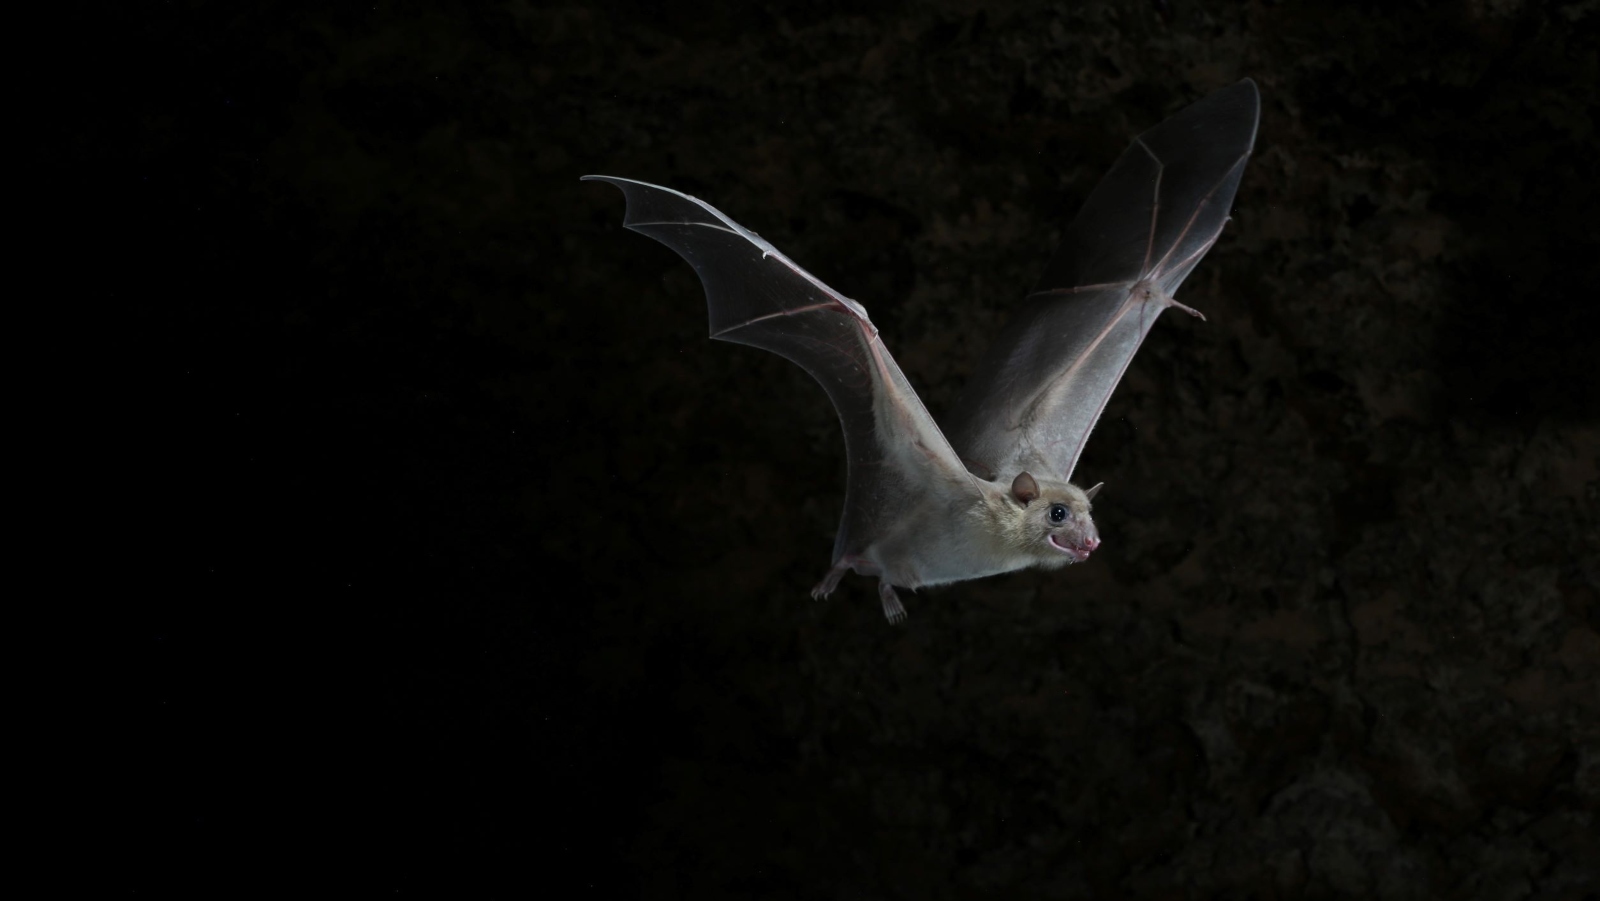 Bats often get hurt by wind turbines. Photo by Jens Rydell